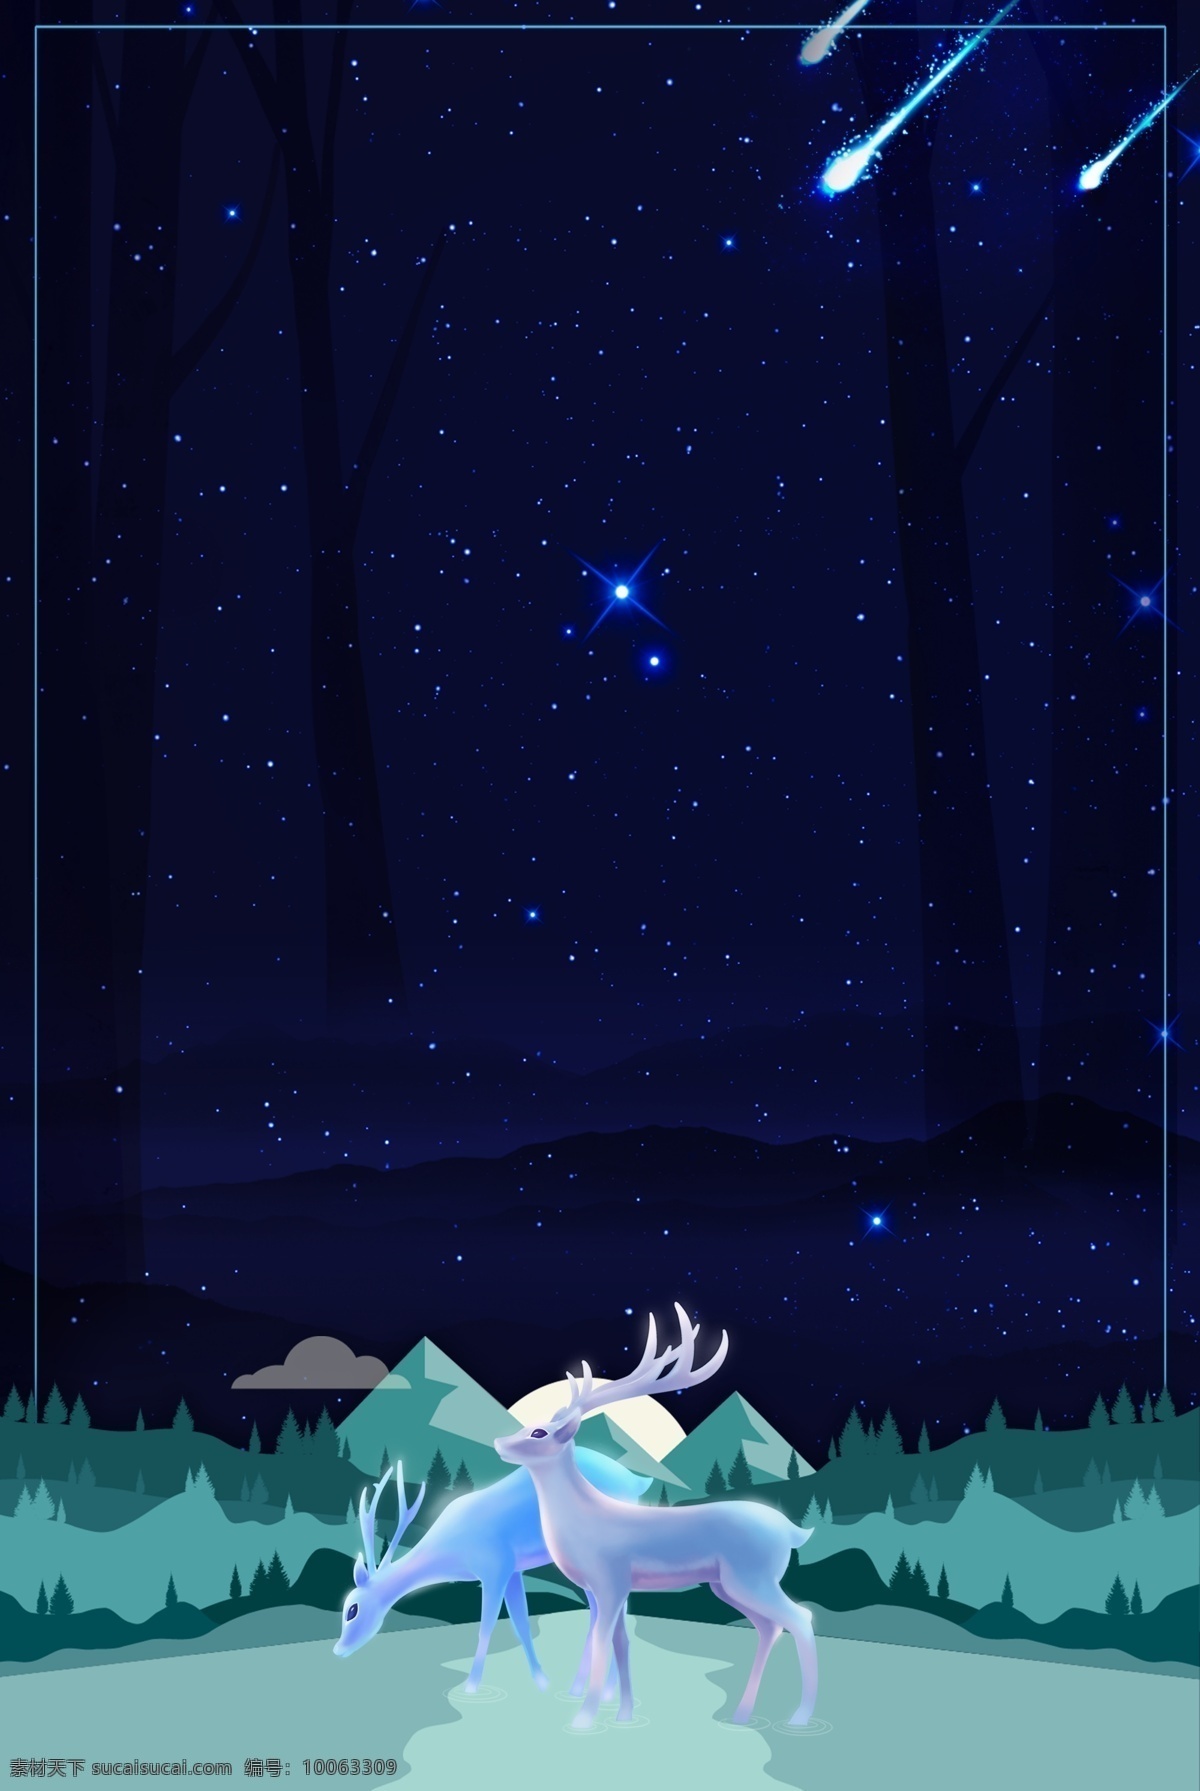 蓝色 星光 下 麋鹿 背景 山脉 森林 唯美 月夜 森林麋鹿 森林背景